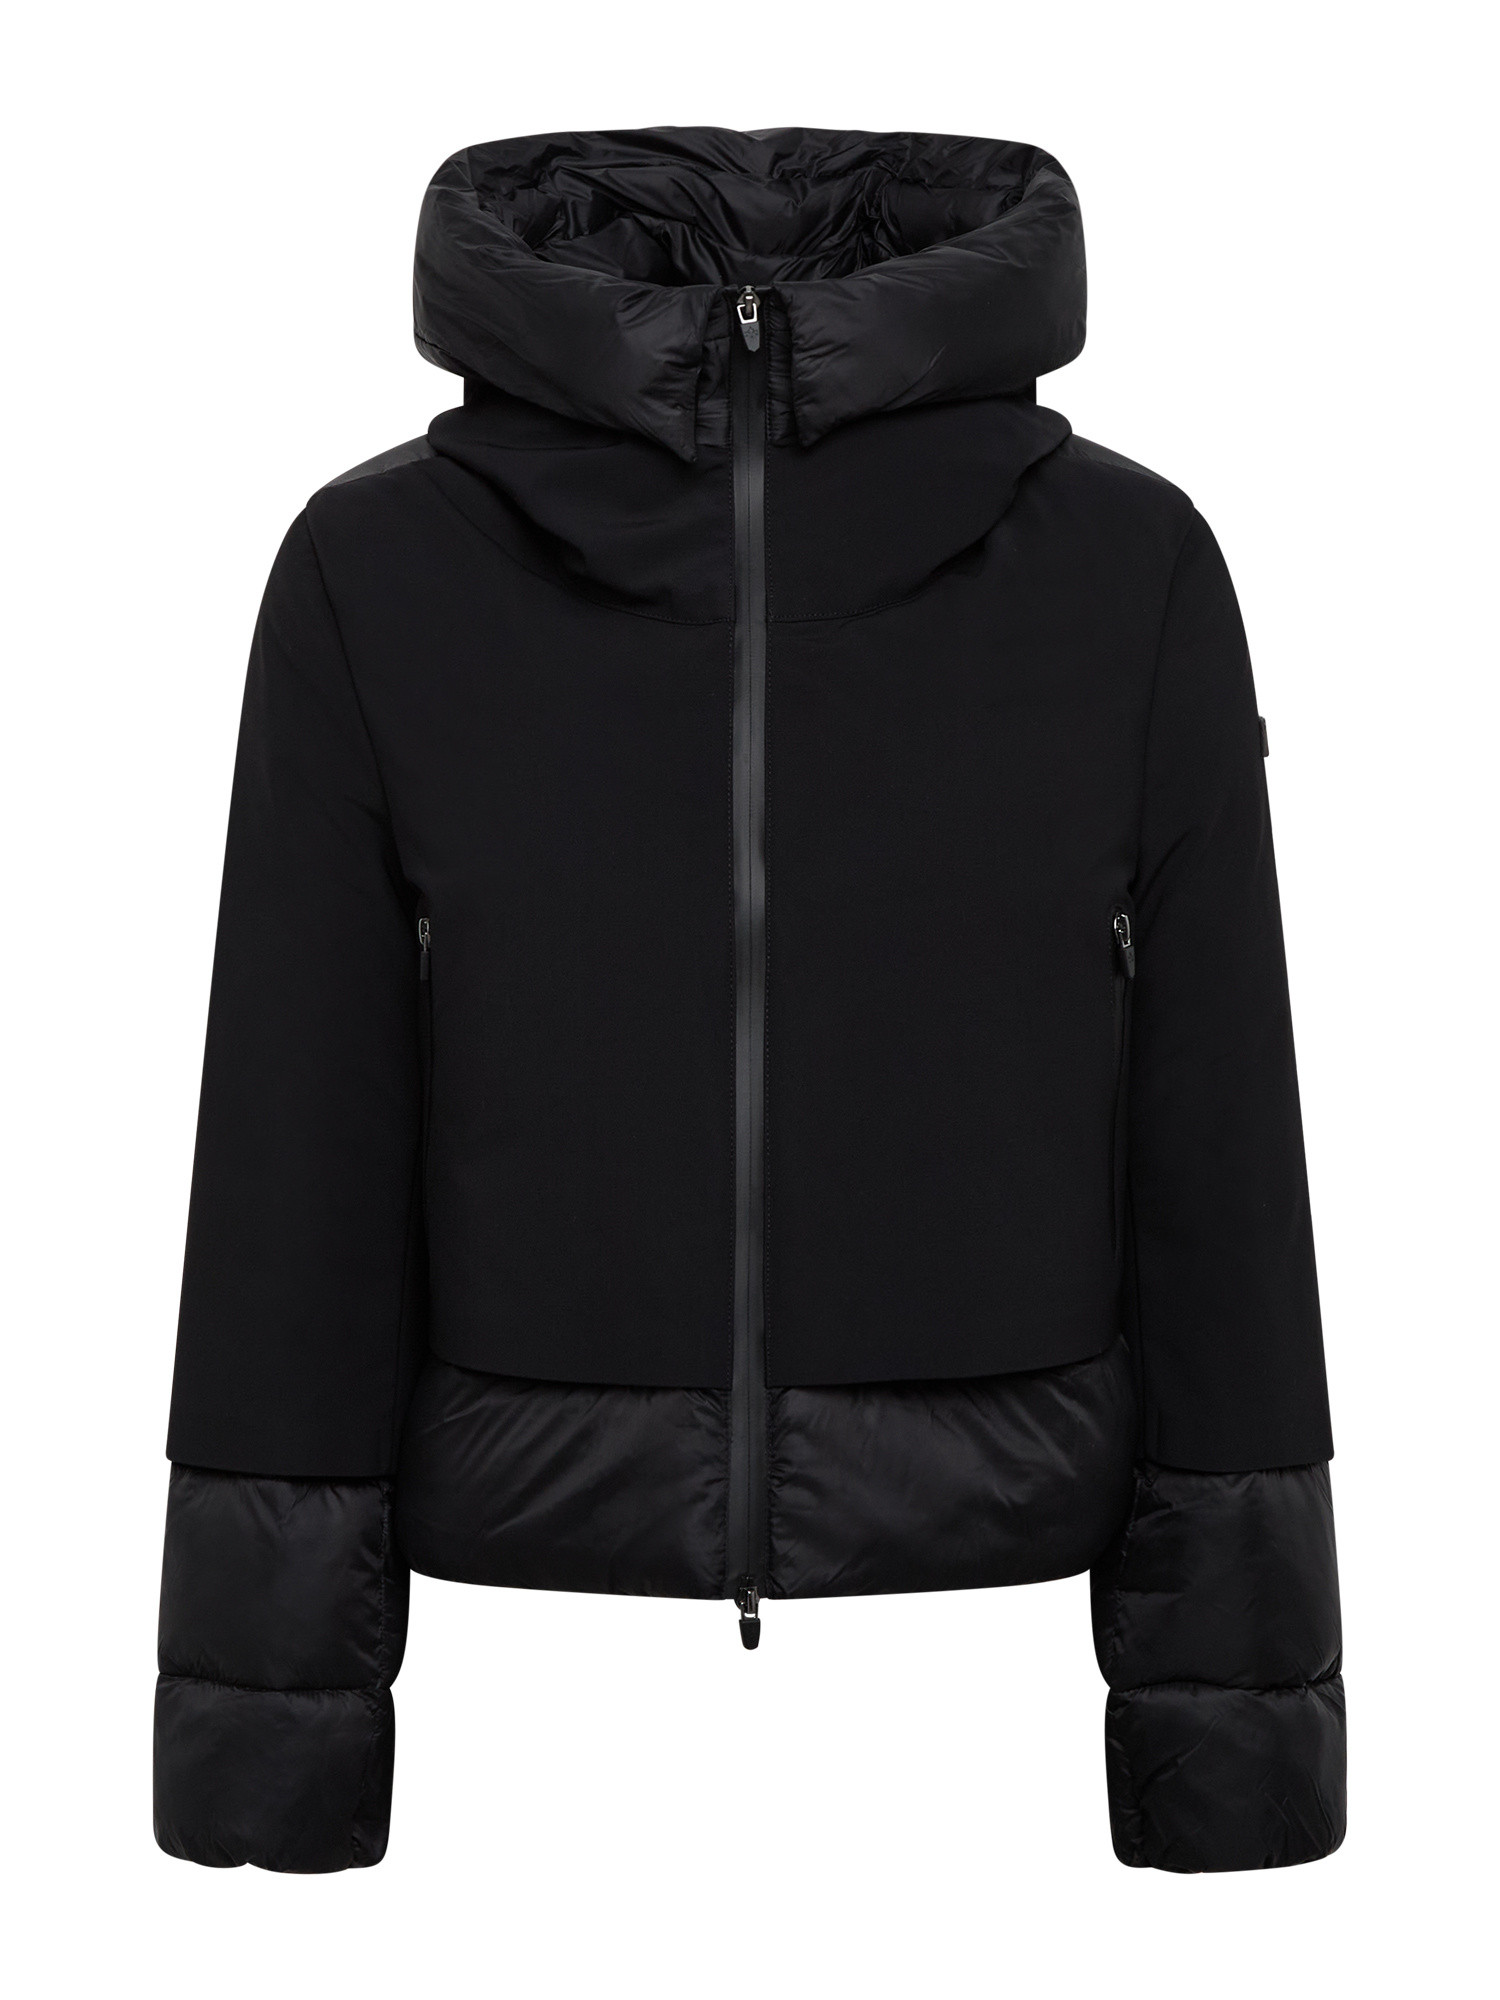 Canadian - Becancour short jacket, Black, large image number 0